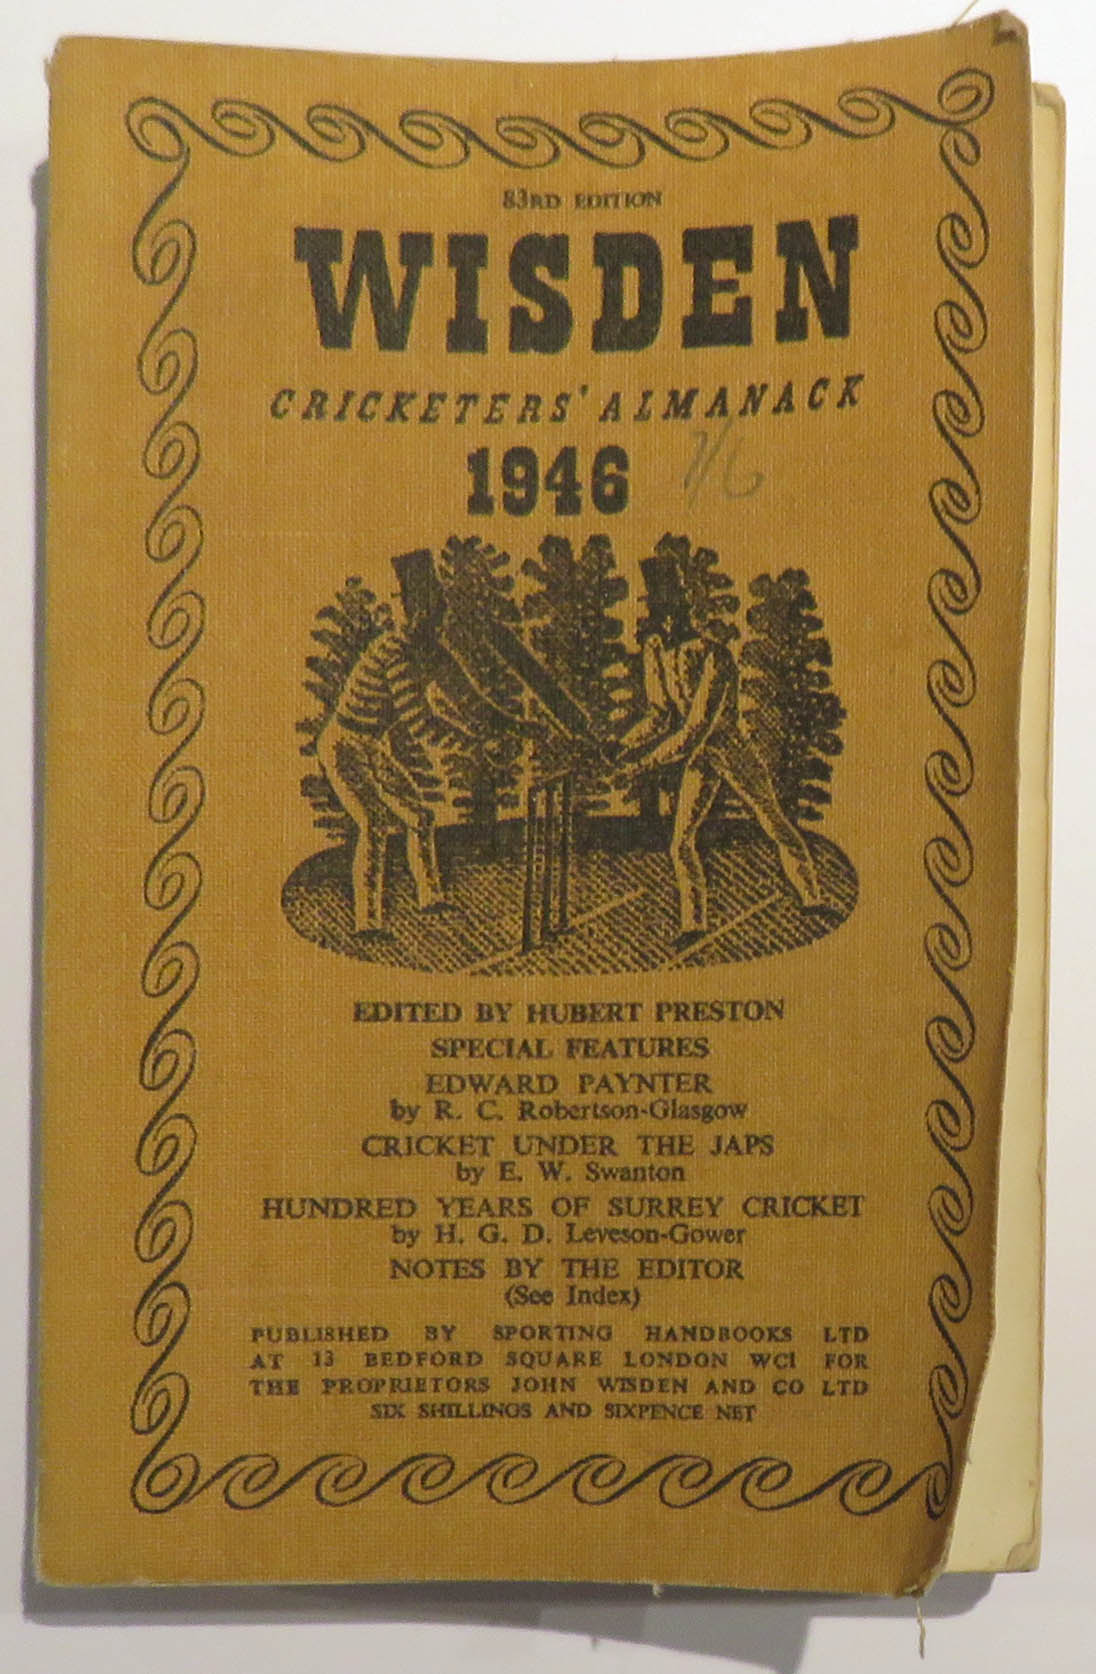 Wisden Cricketers' Almanack 1946